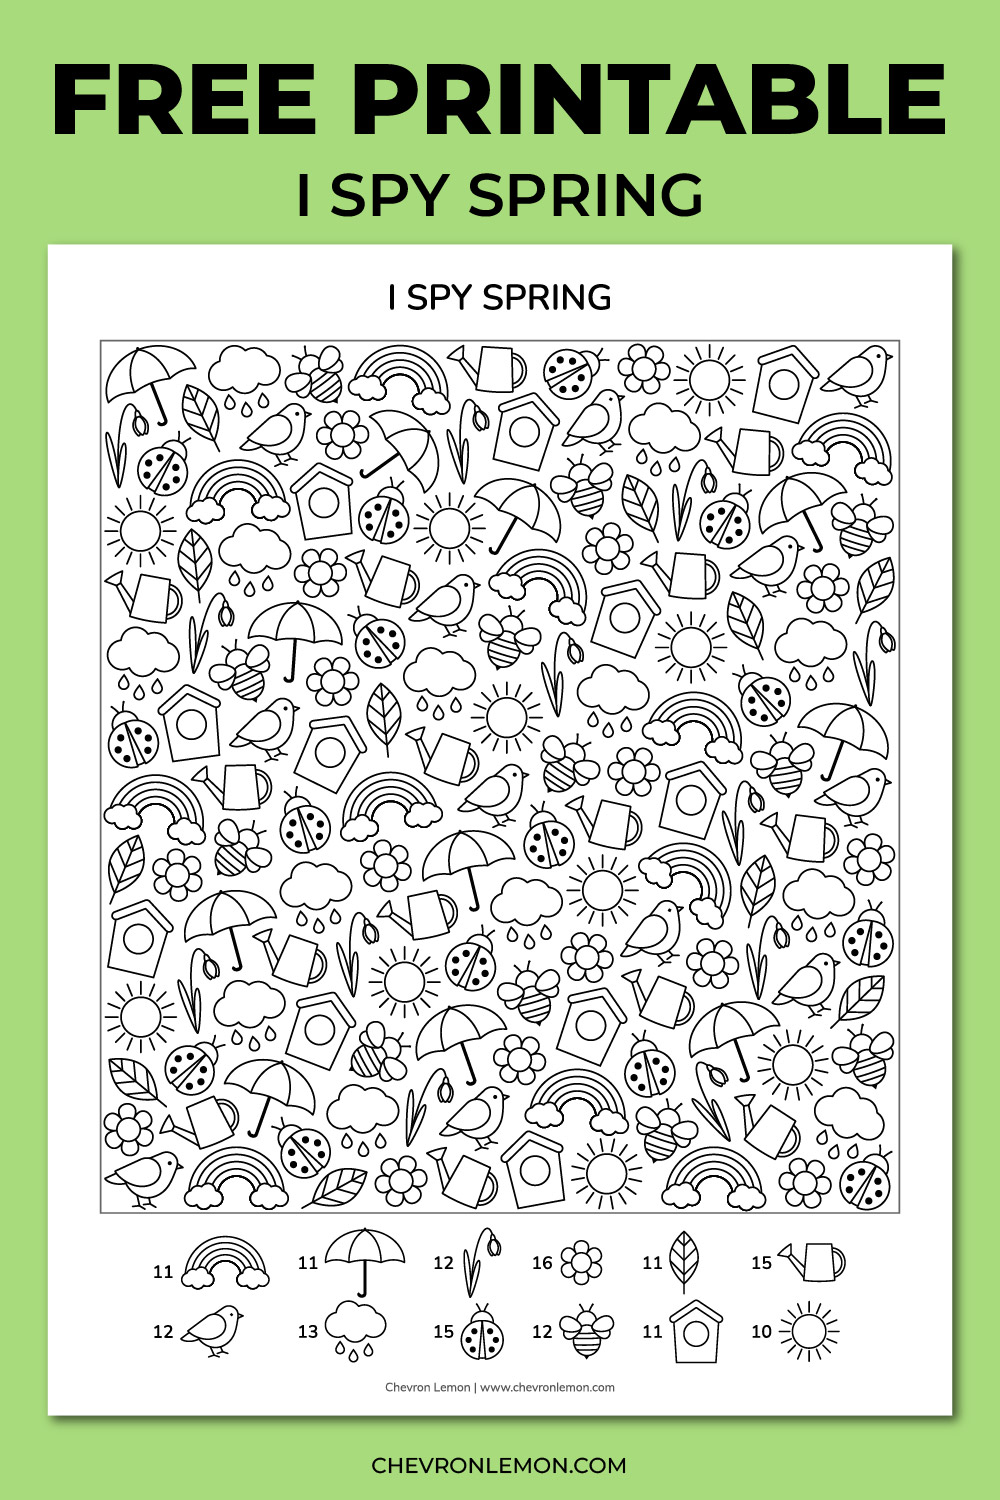 I spy spring